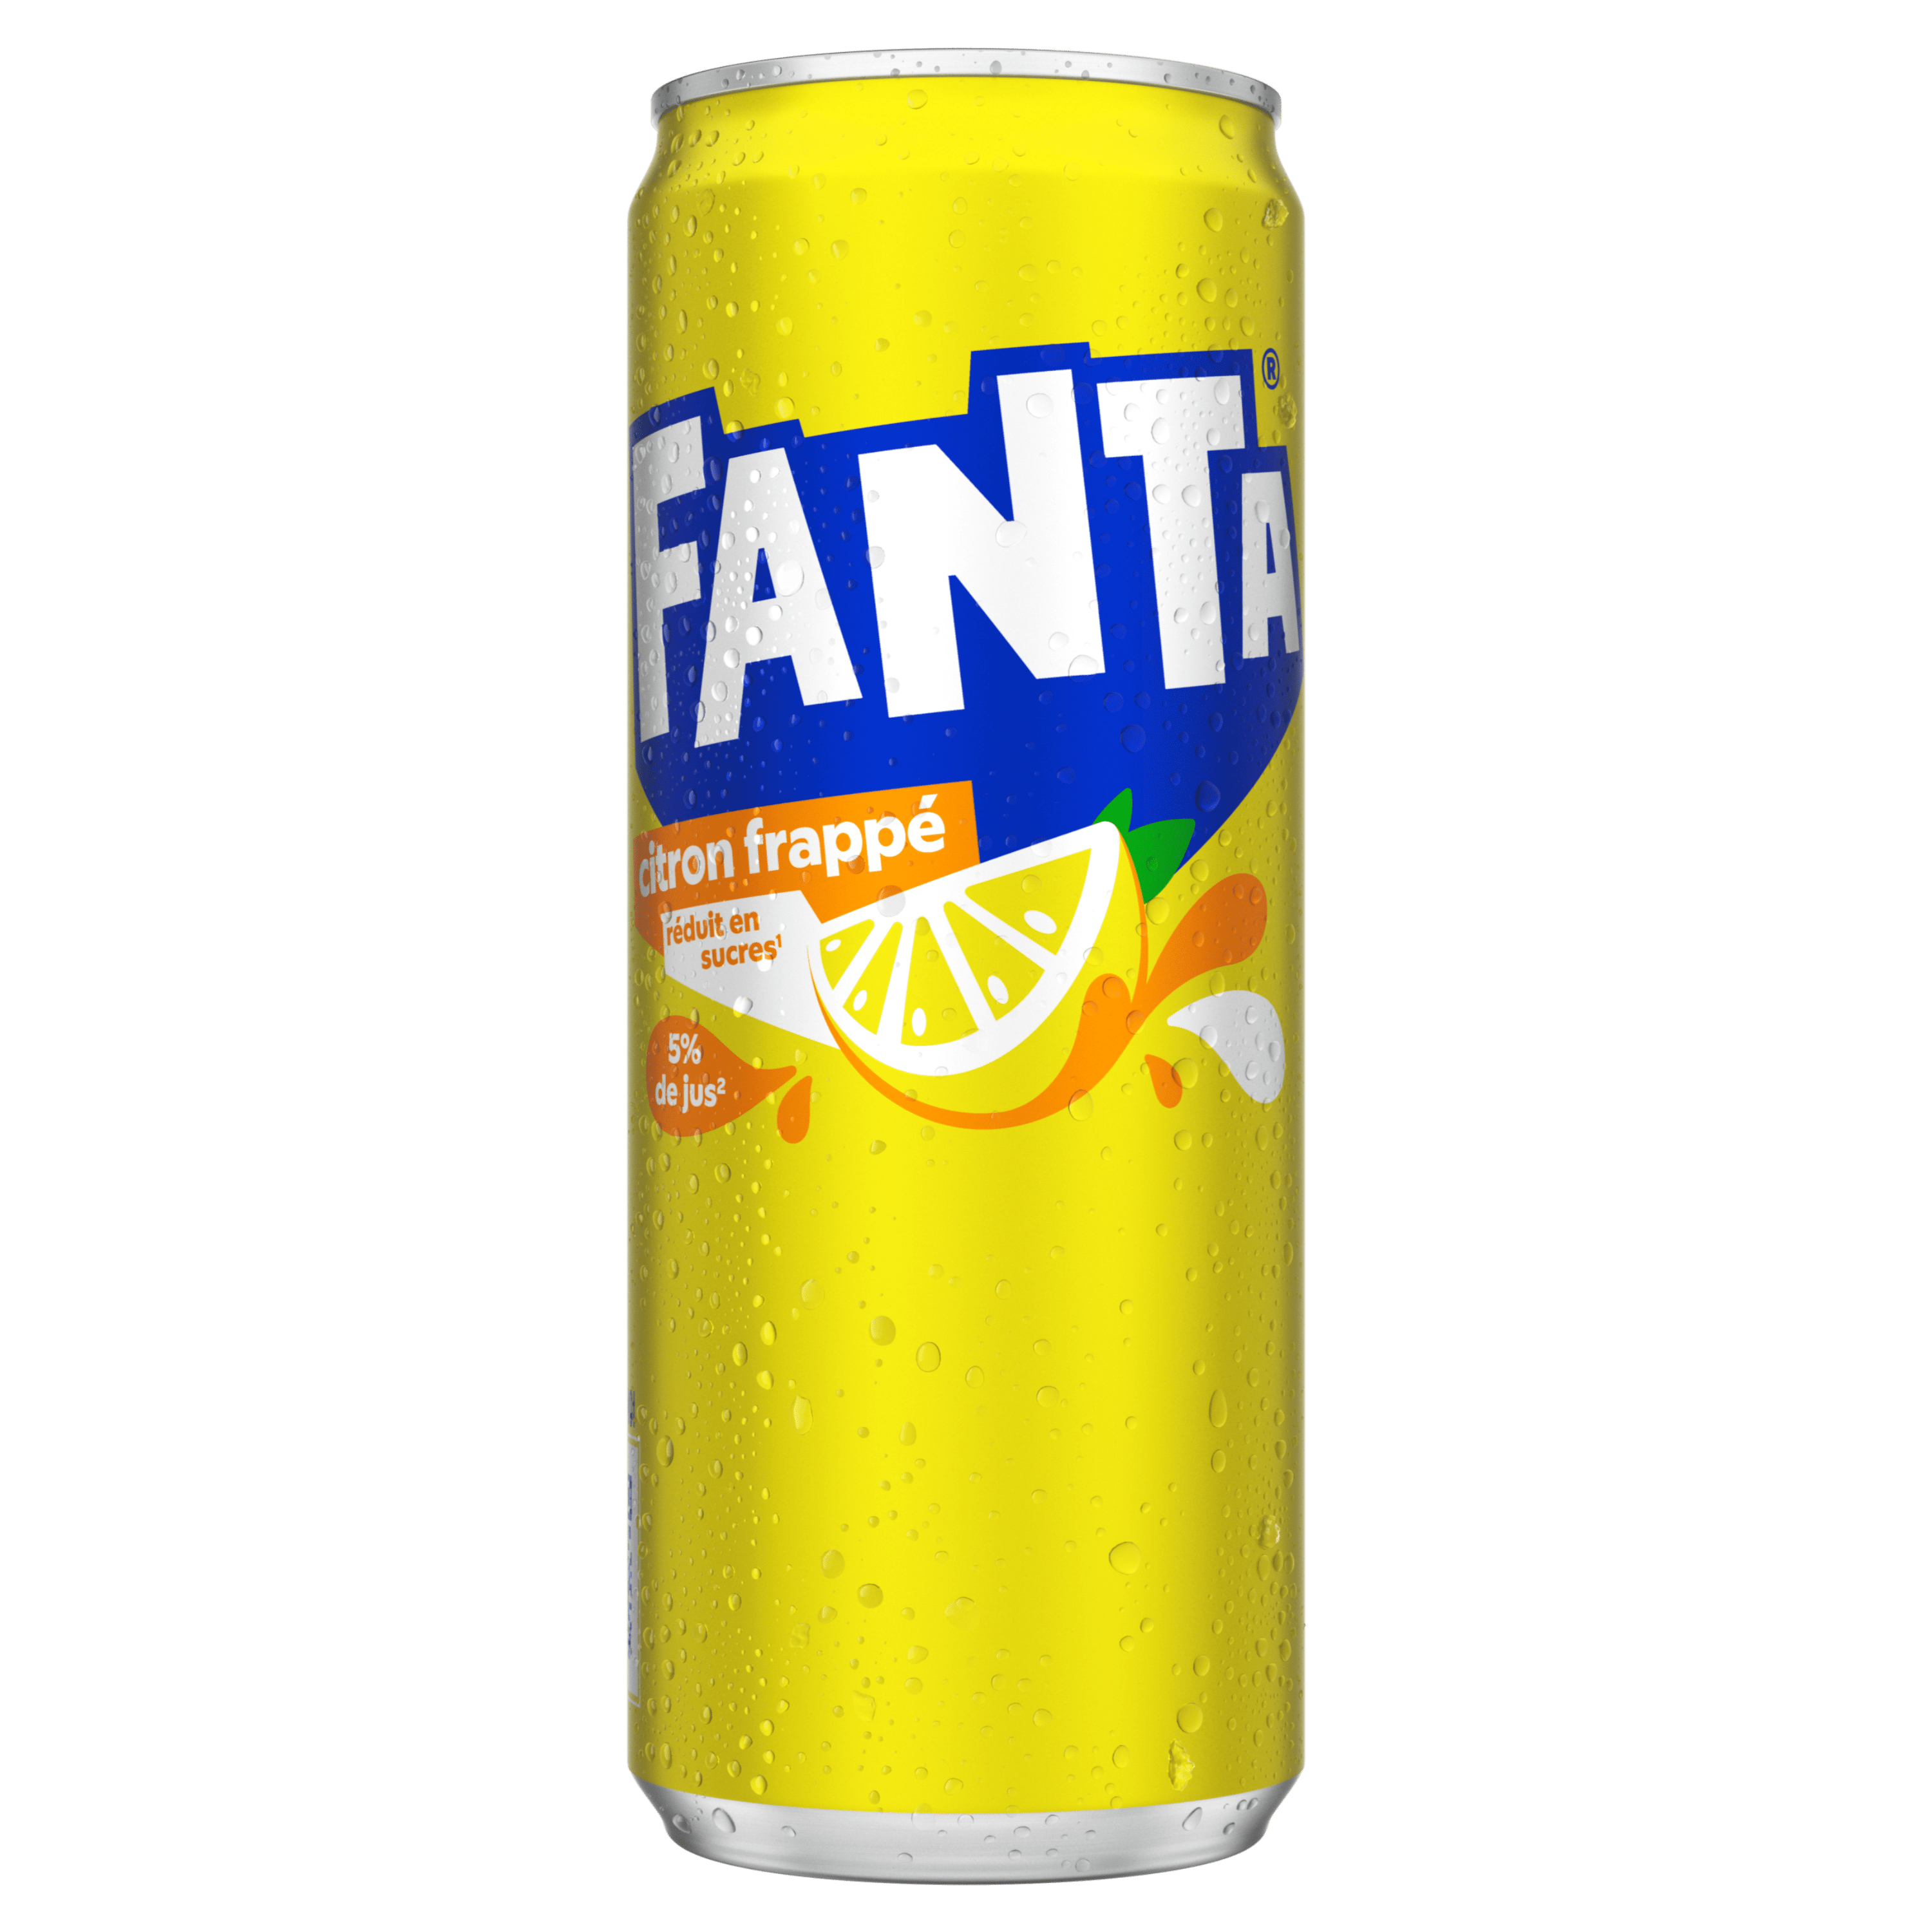 Bouteille de Fanta citron frappé